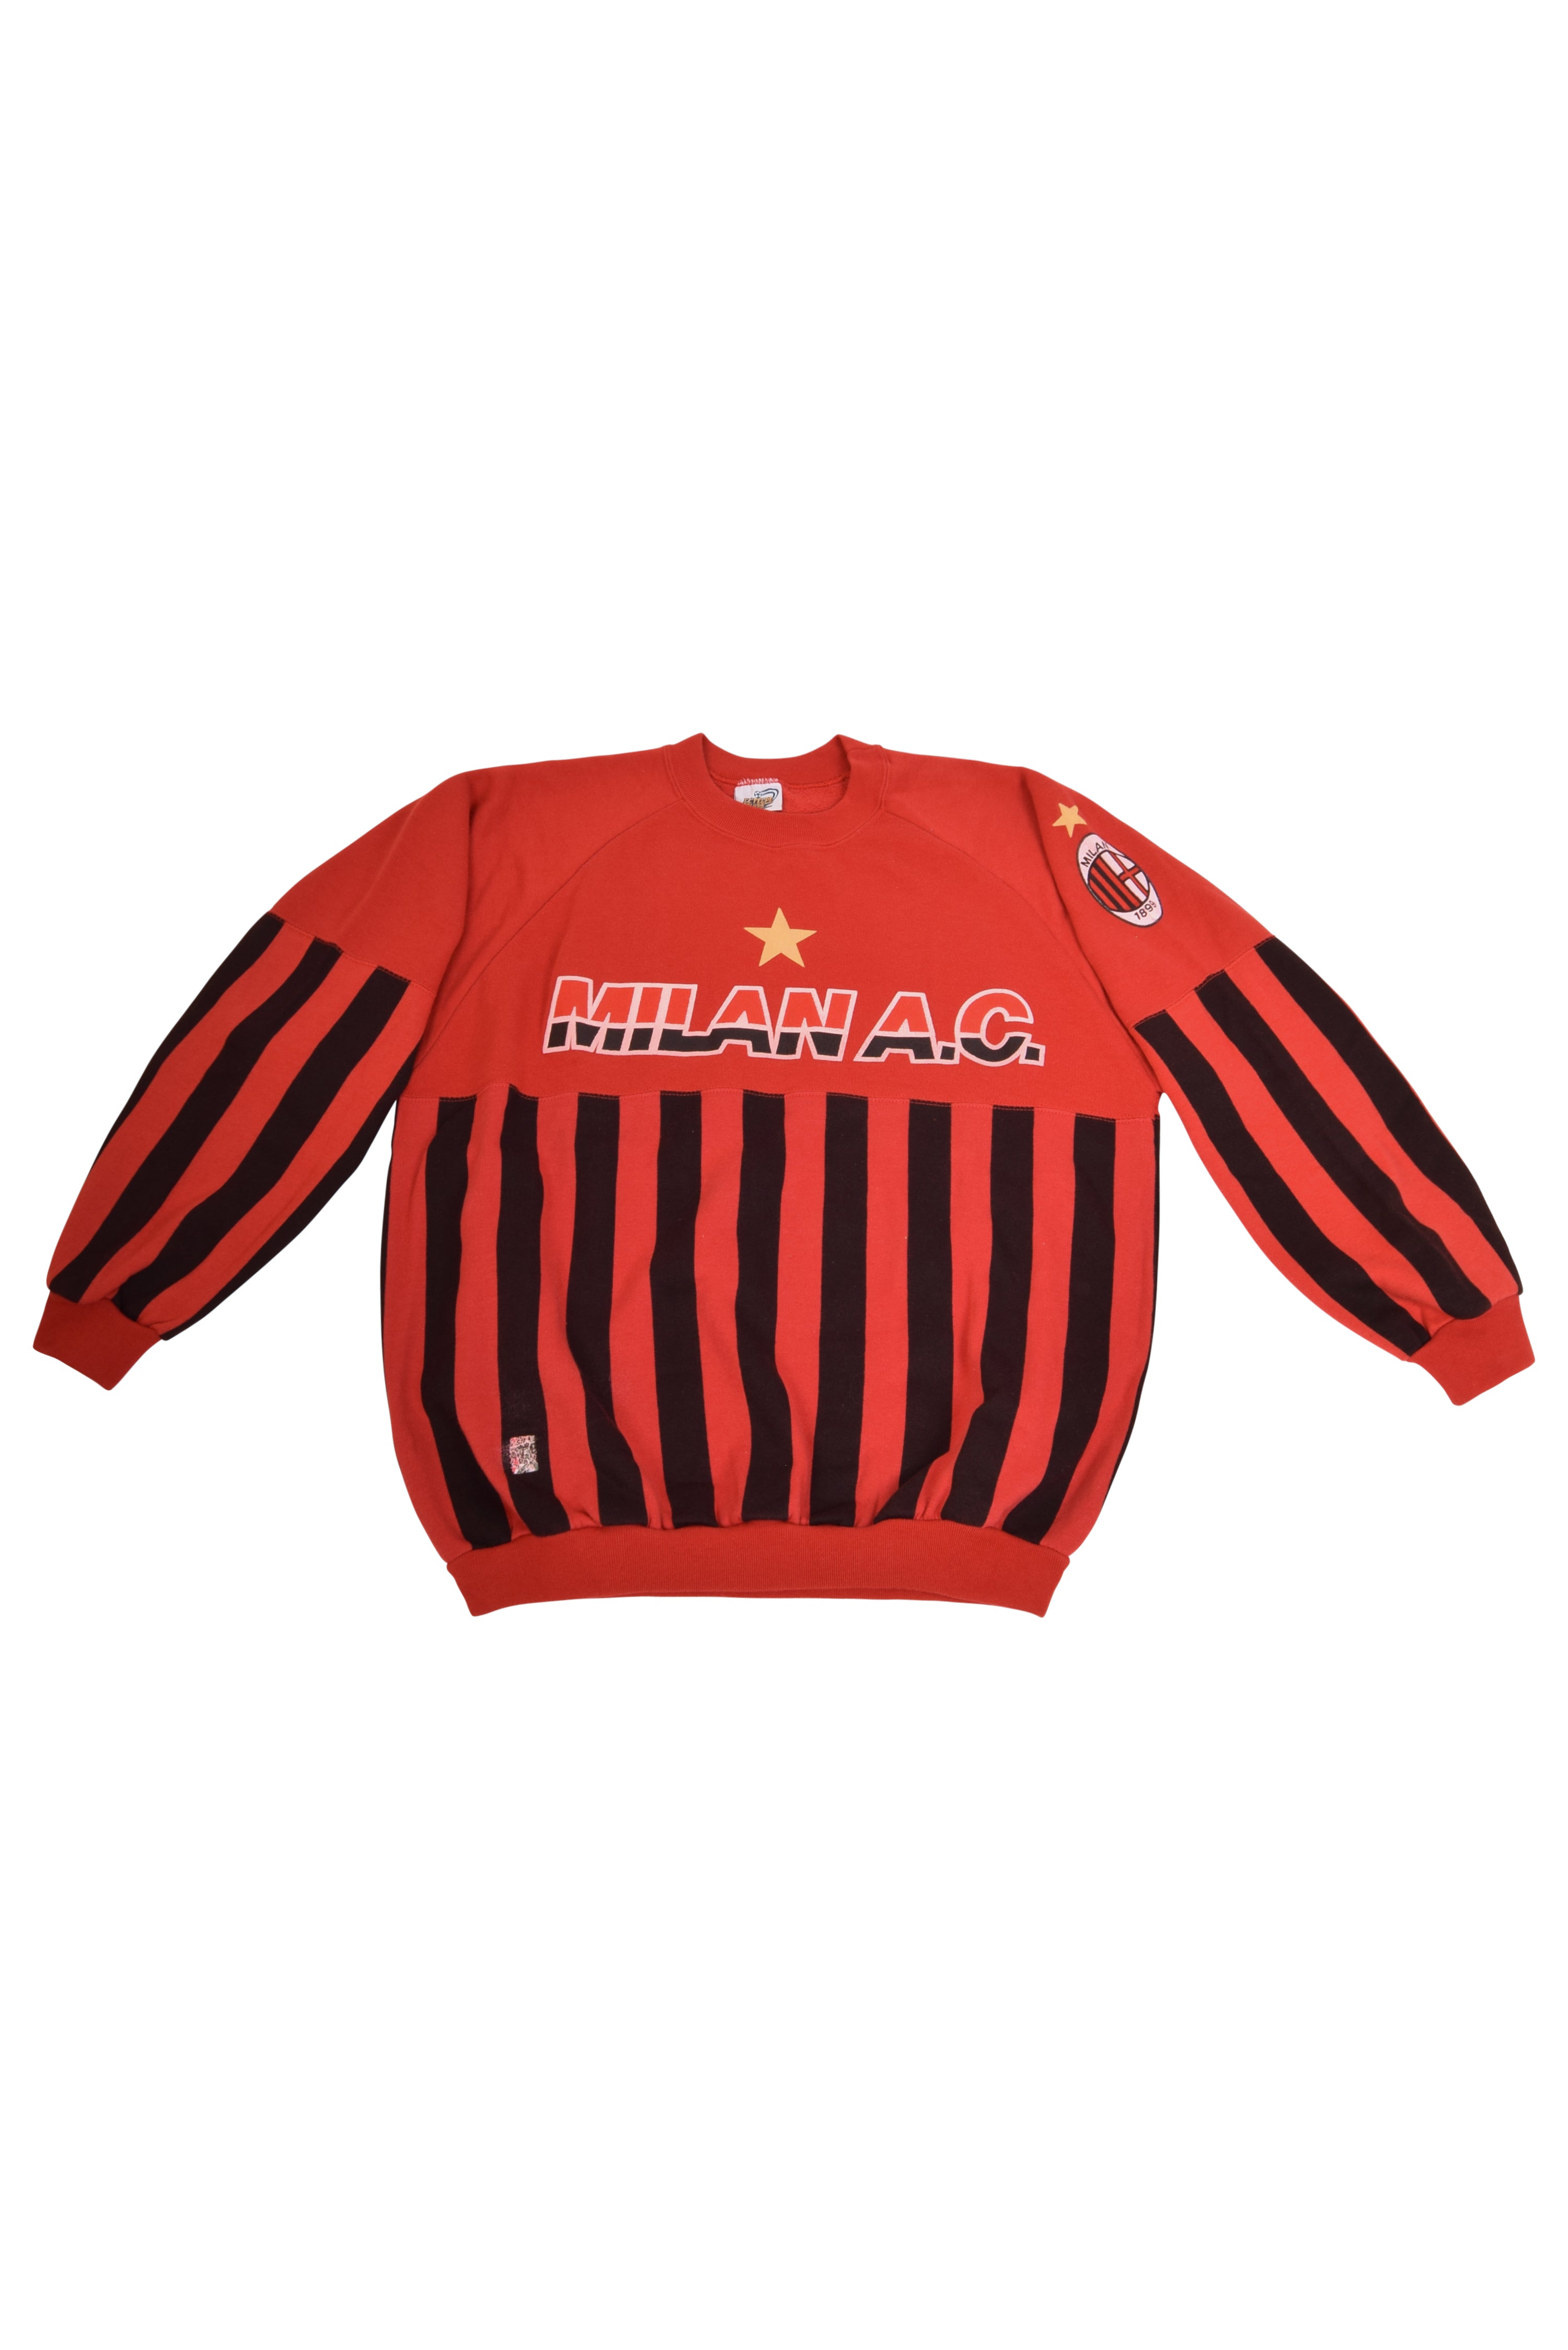 vintage ac milan sweatshirt